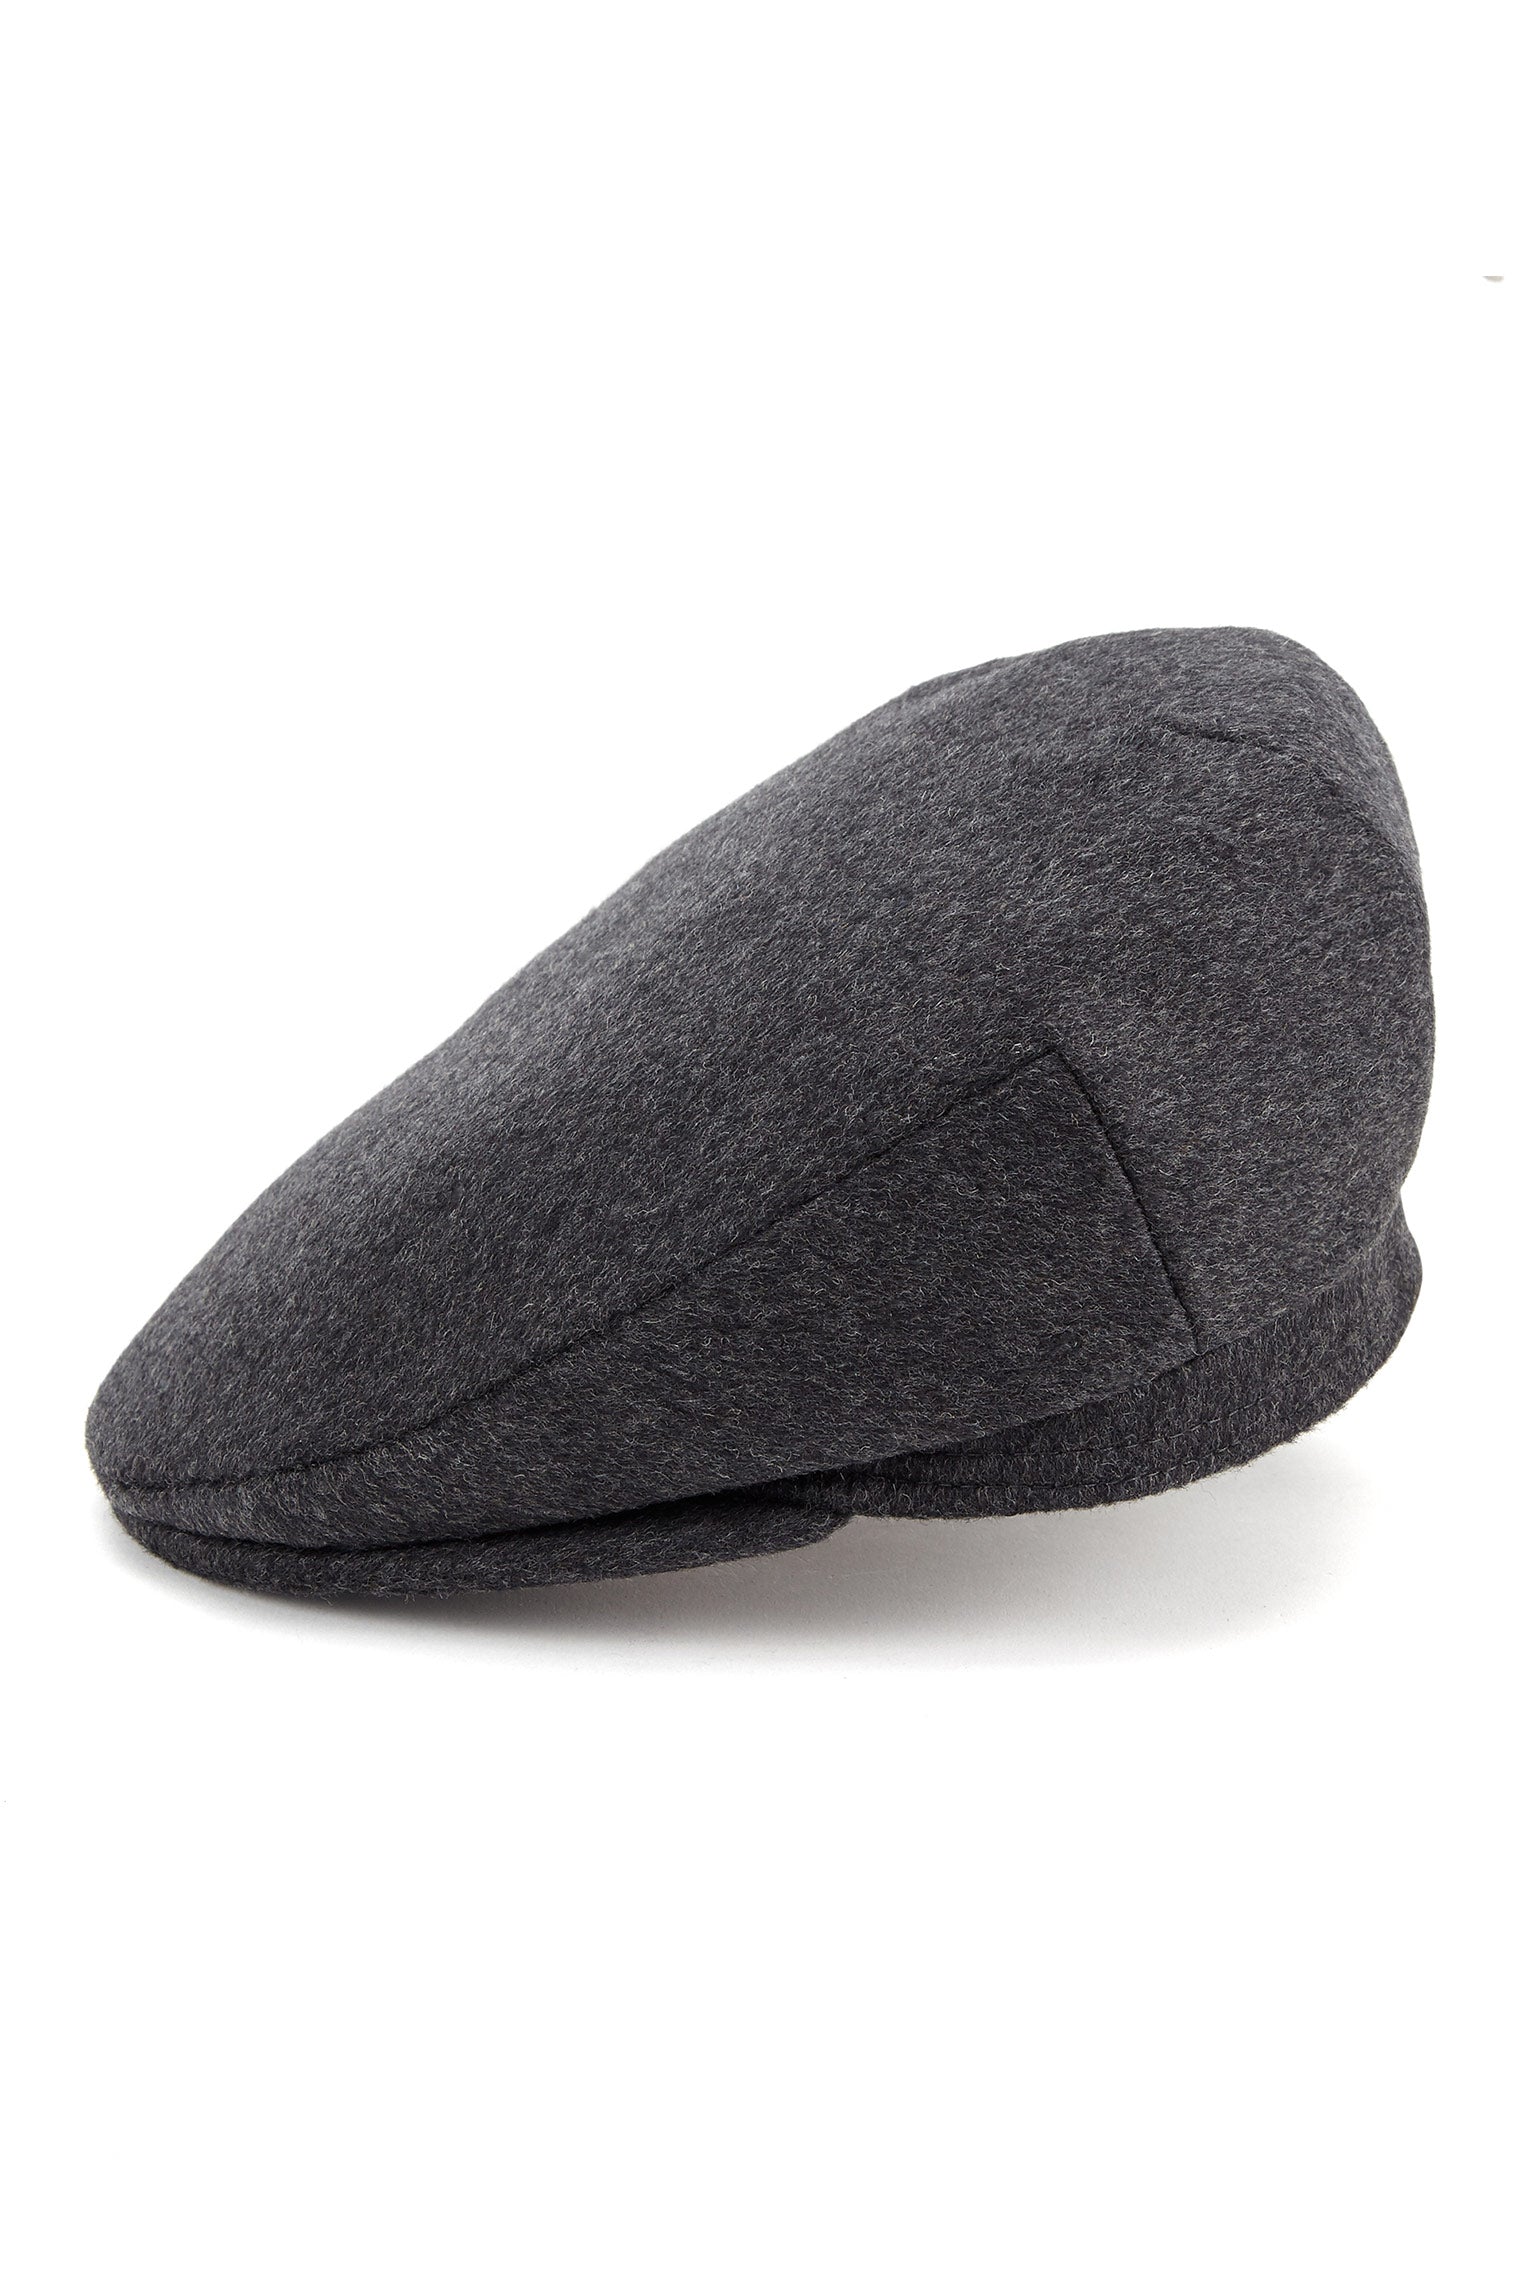 Oslo Tweed Flat Cap - Hats with Ear Flaps - Lock & Co. Hatters London UK